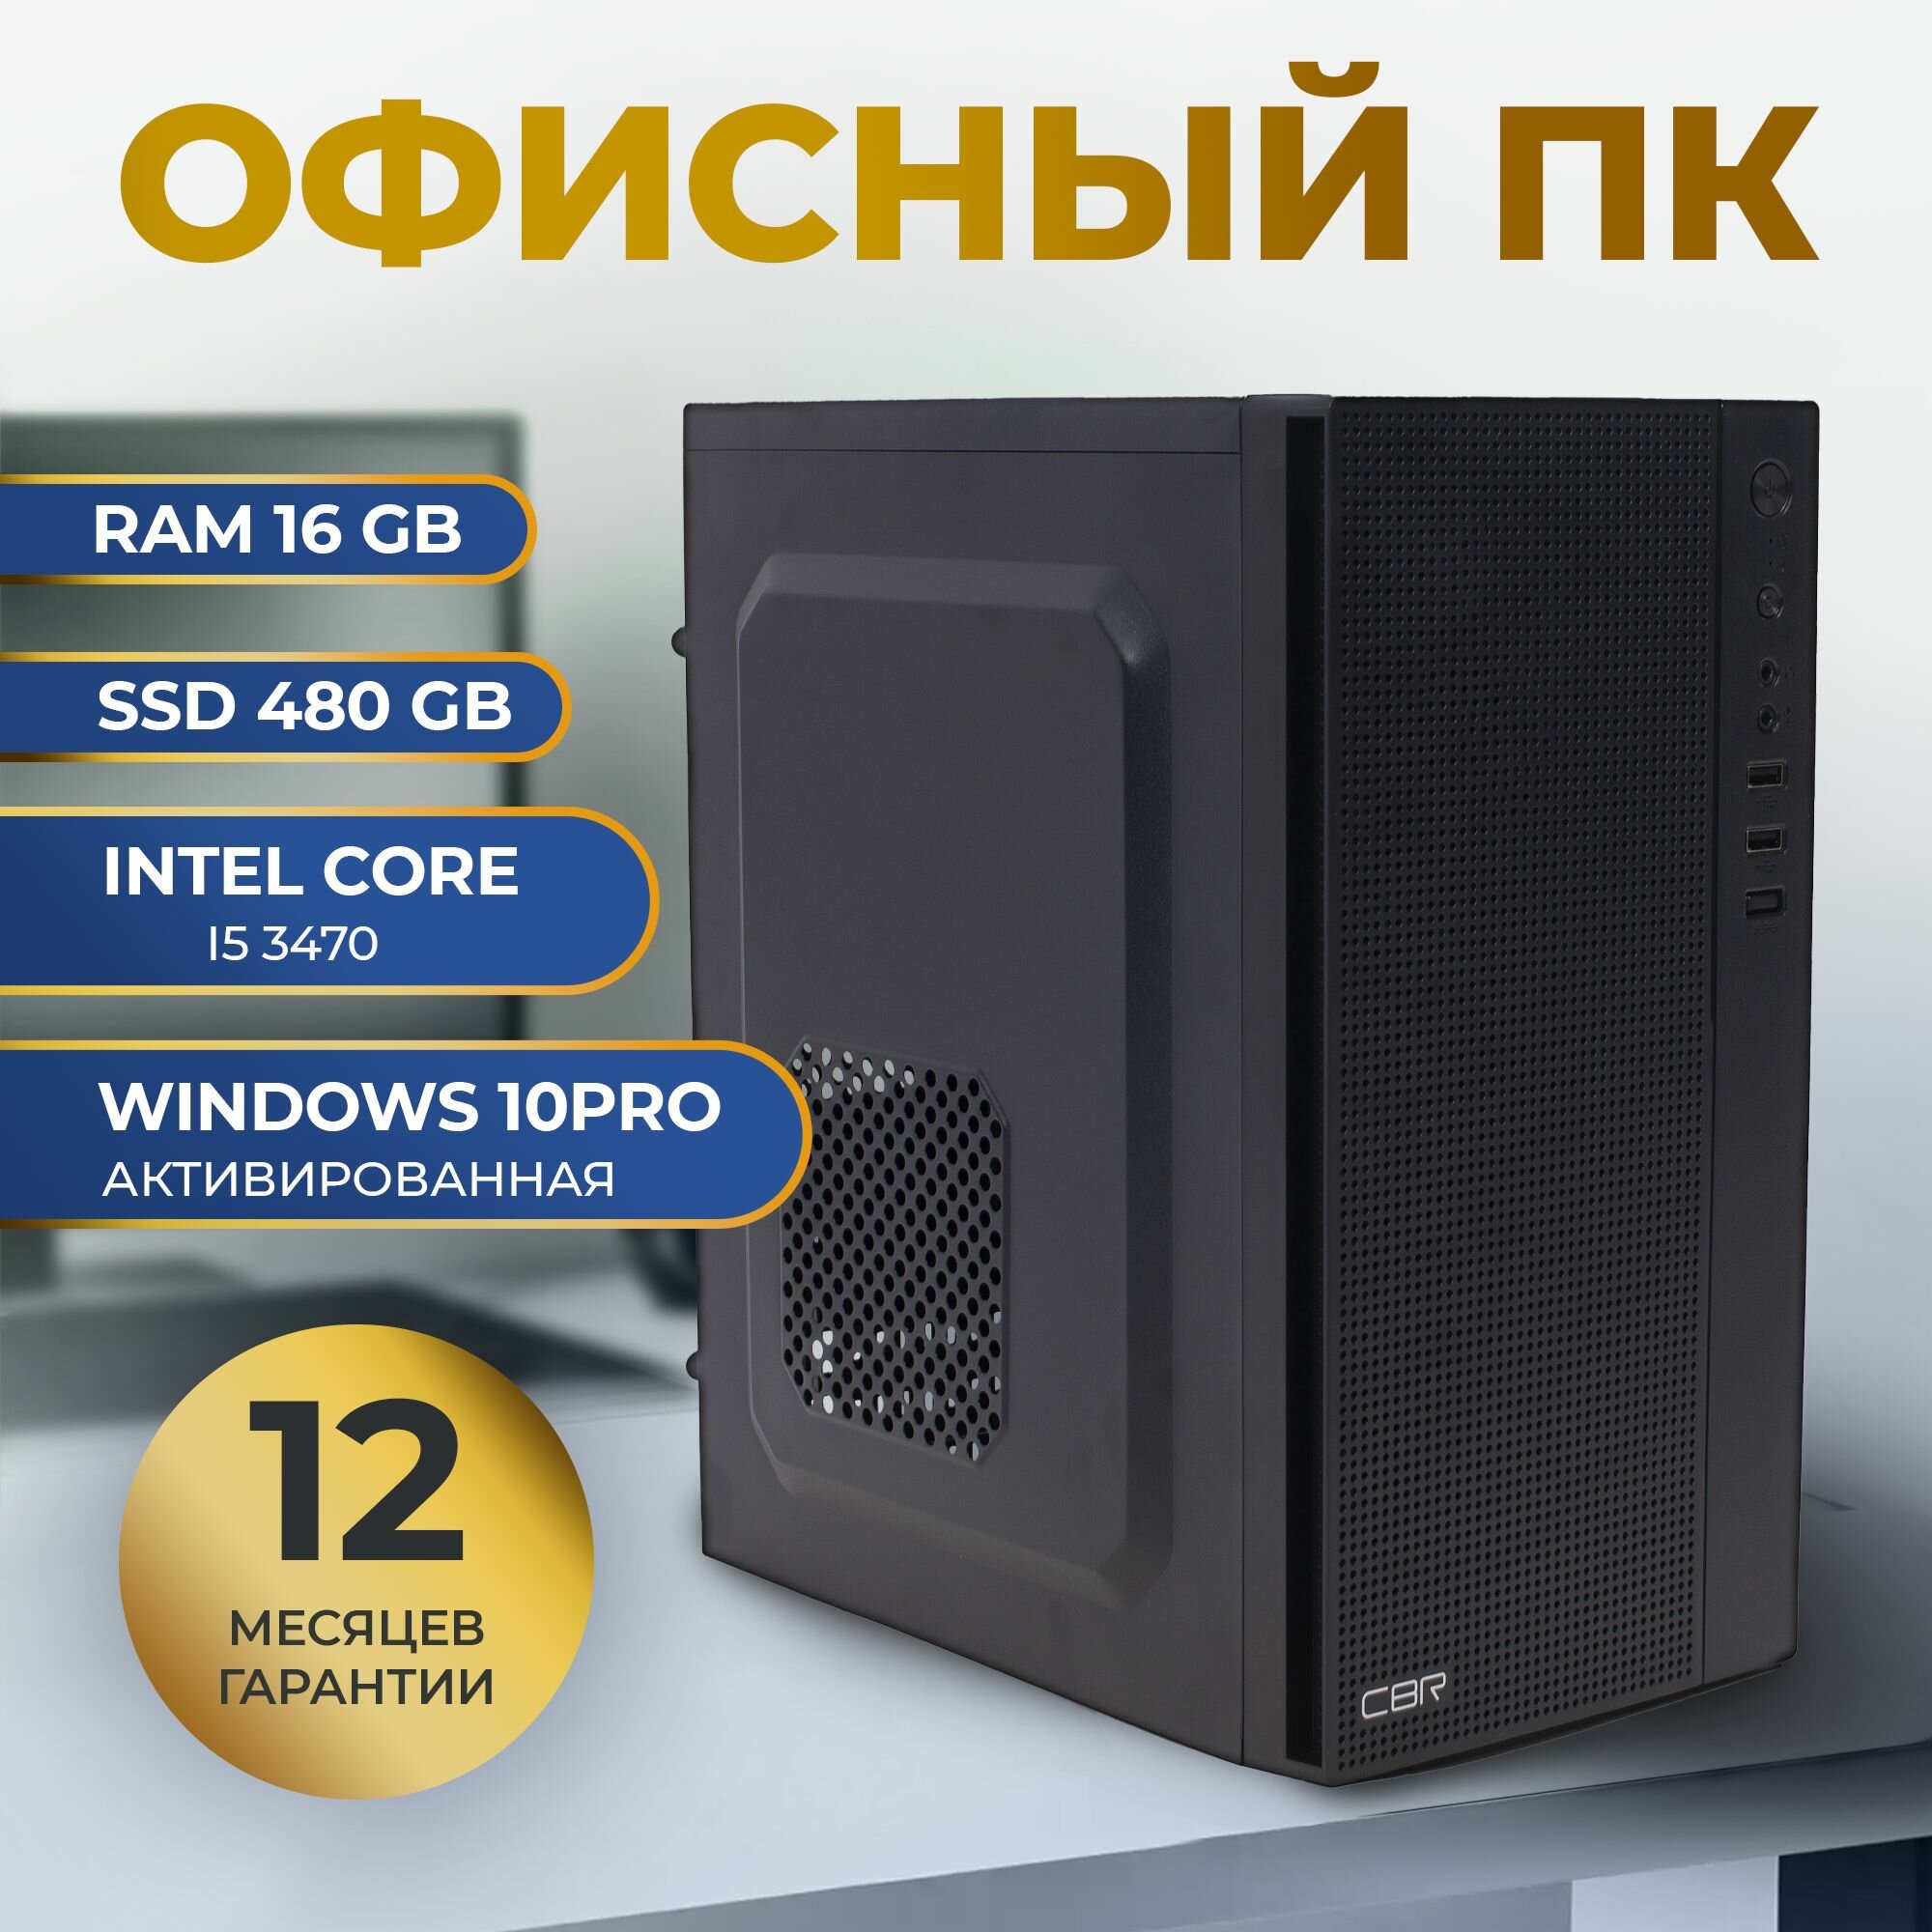 Системный блок Platinum PC (Intel core i5 3470 (3.2 ГГц), RAM 16 ГБ DDR3, SSD 480 ГБ, Intel HD Graphics) Офисный компьютер